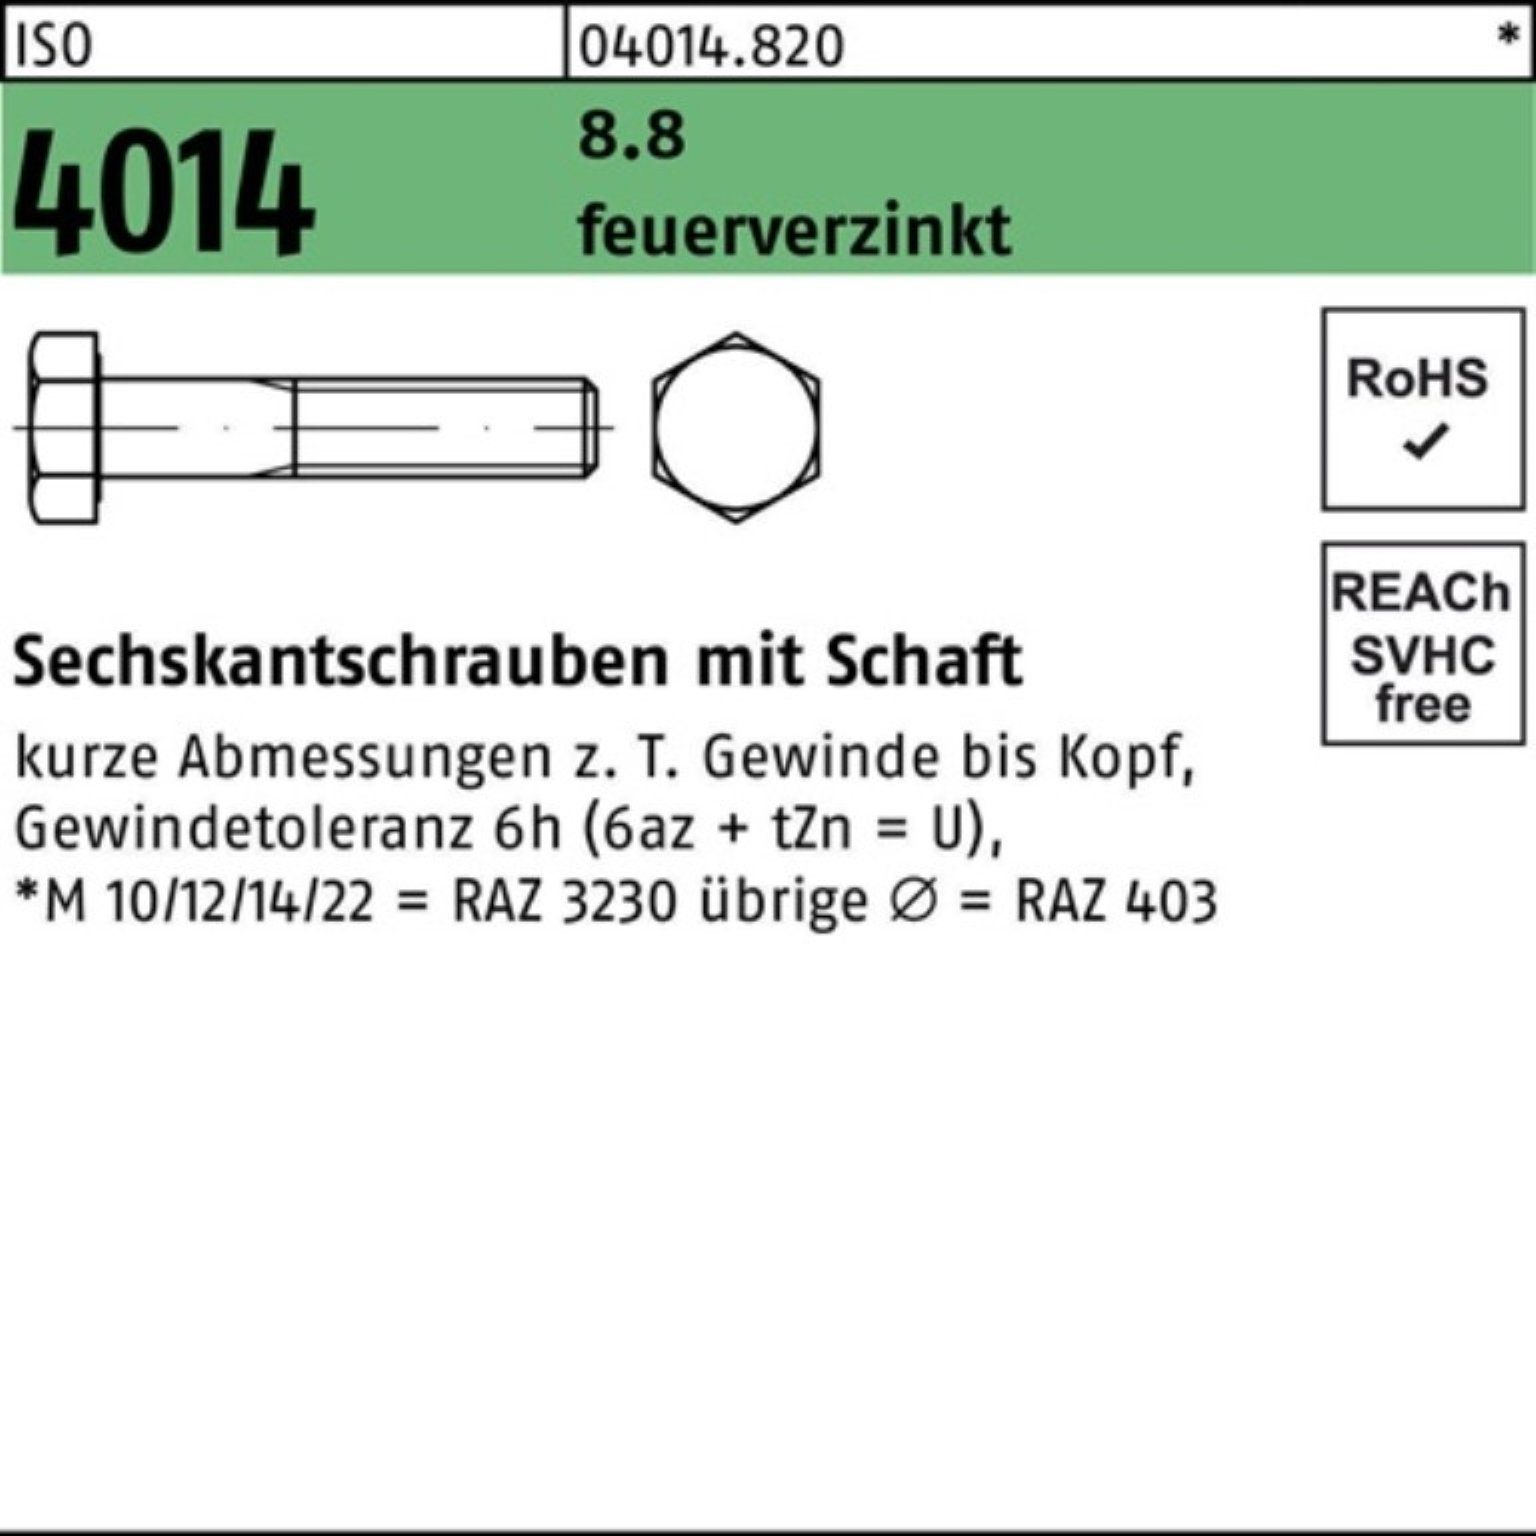 Sechskantschraube Sechskantschraube Bufab 1 8.8 100er ISO Pack Schaft feuerverz. M24x 200 4014